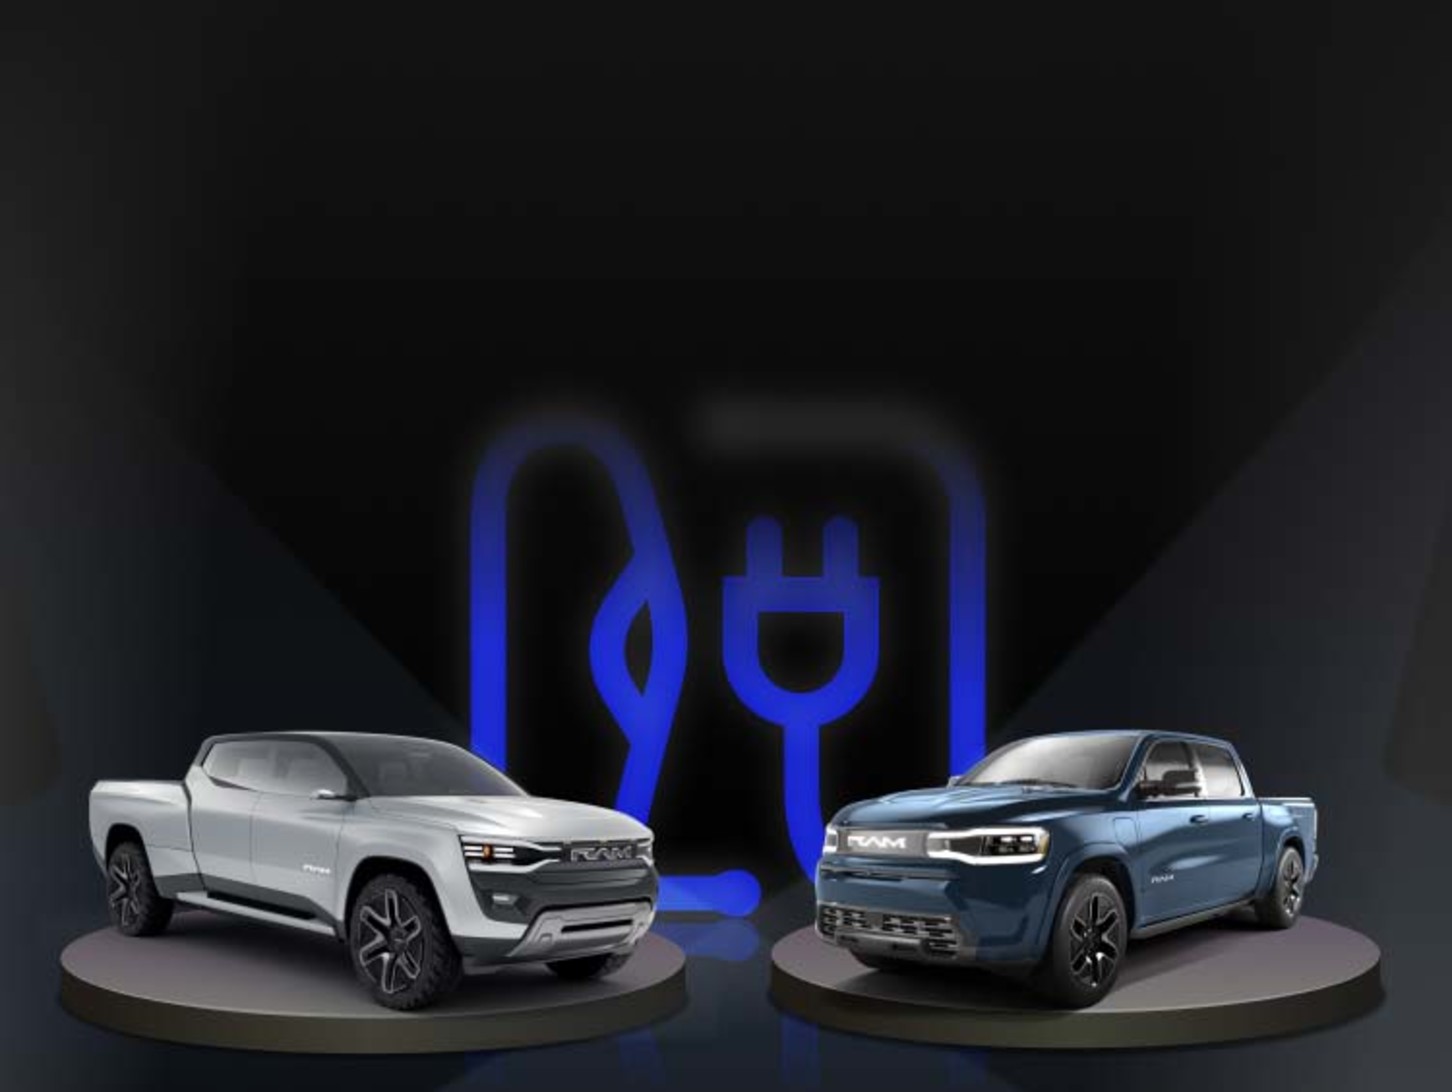 Image de camions électriques conceptuels Ram 1500 REV bleu et Ram Revolution argenté sur un fond noir.